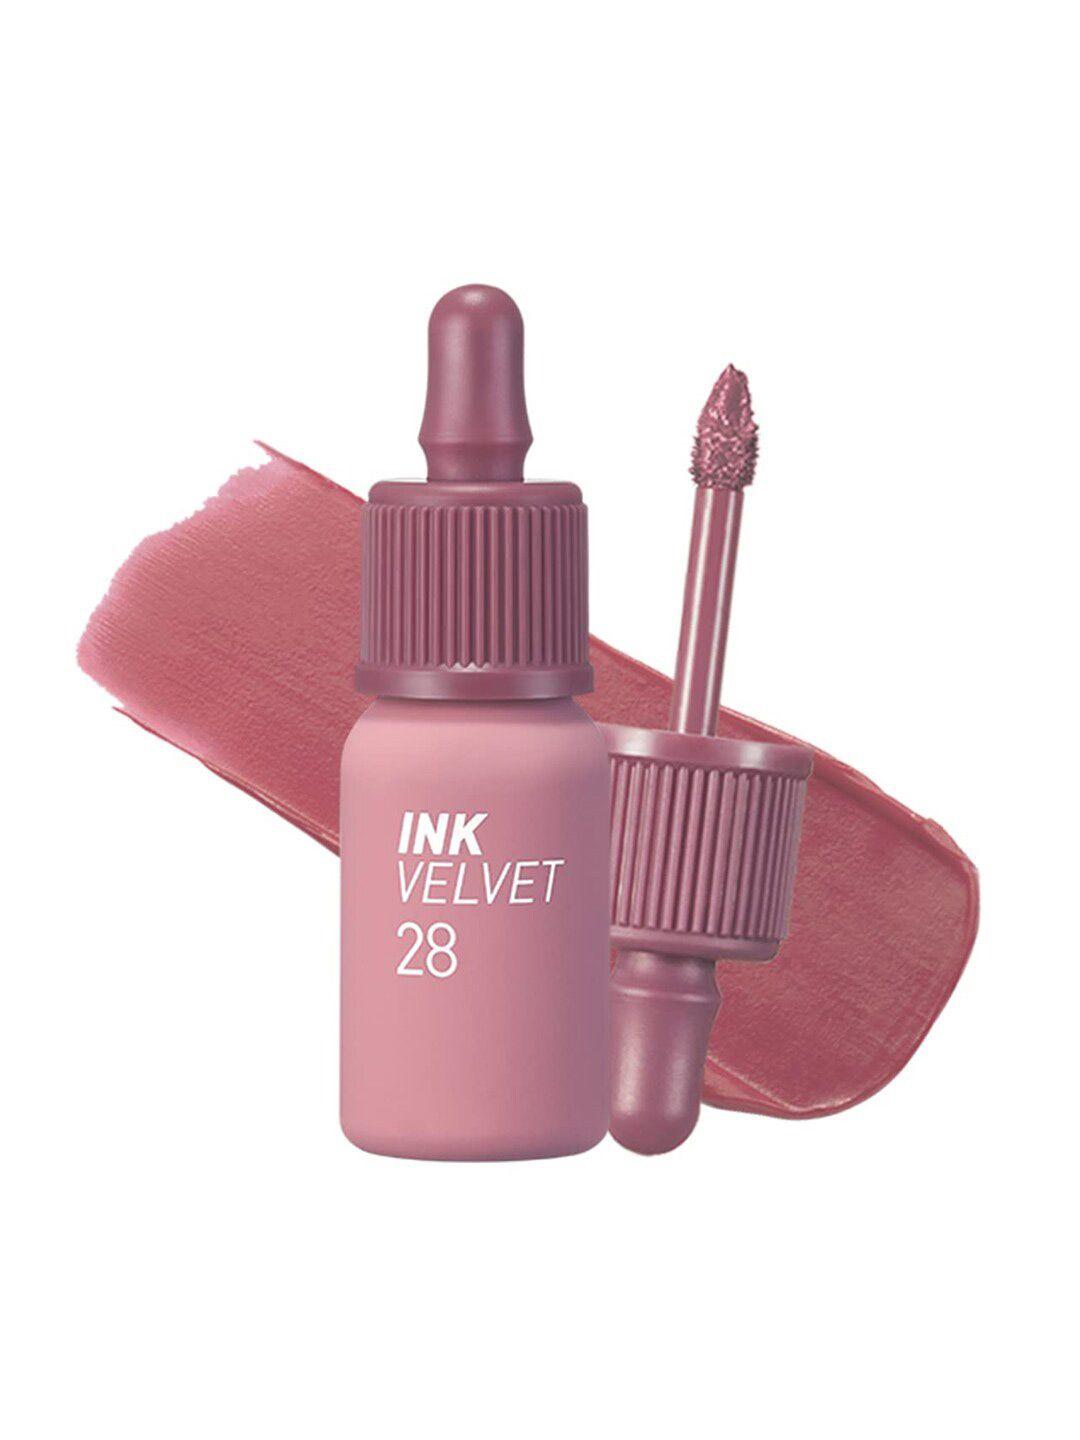 peripera-ink-velvet-long-lasting-liquid-lipstick---mauveful-nude-28